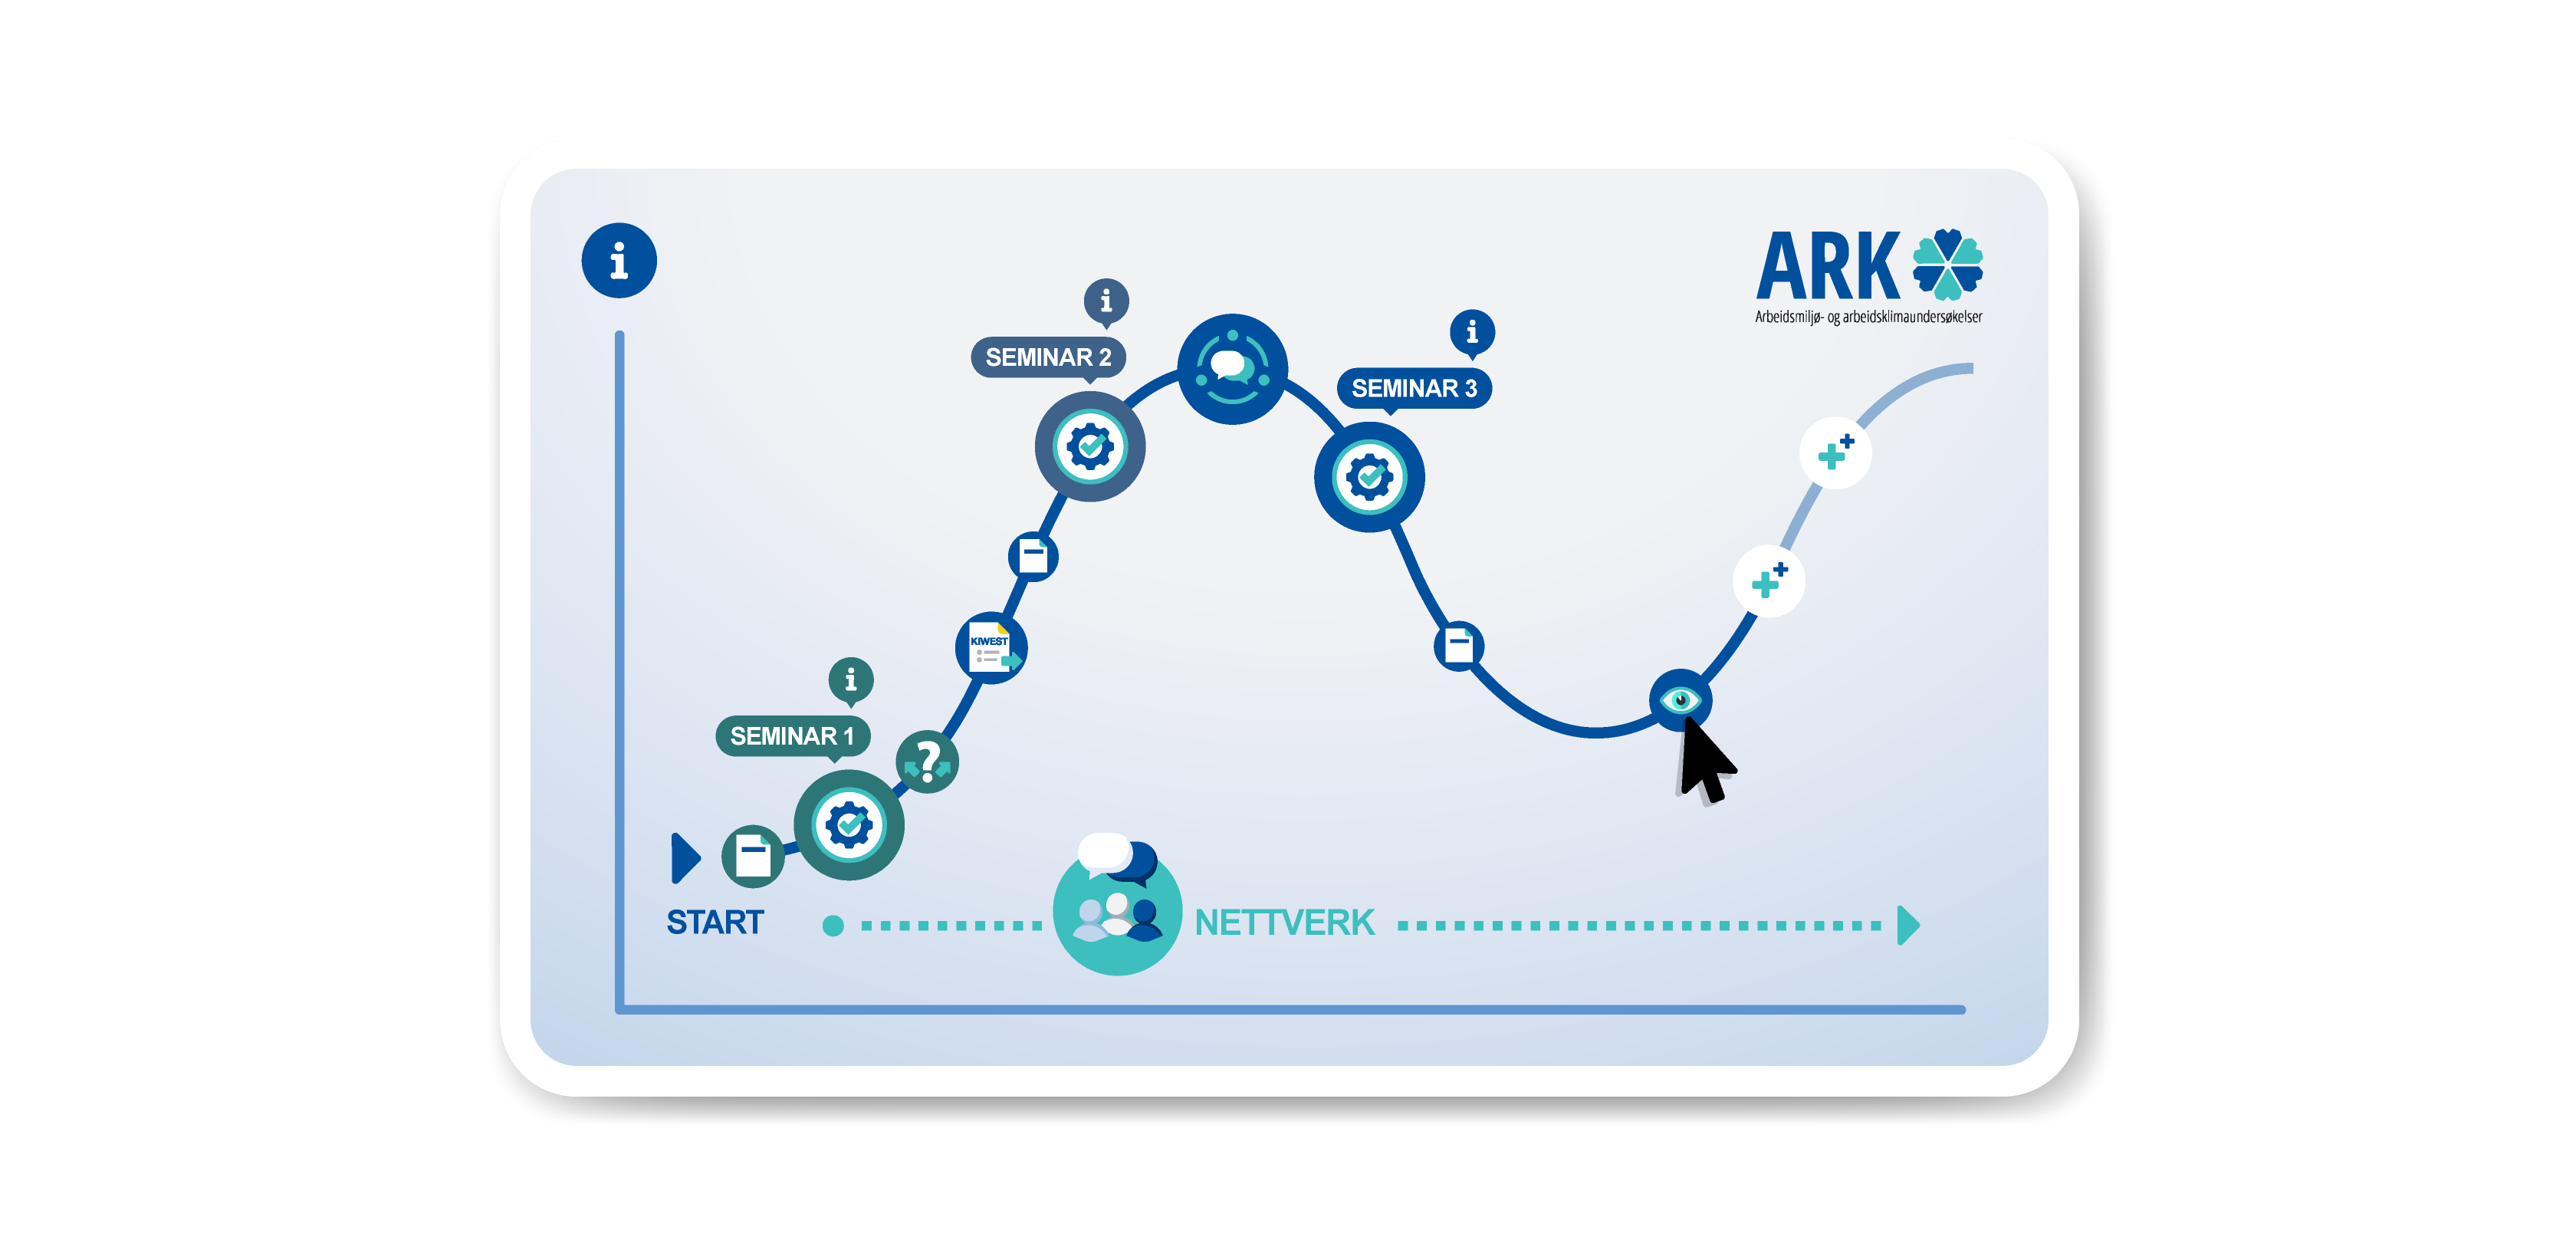 Bilde av ARK sin læringsreise i et TRIKKSlet